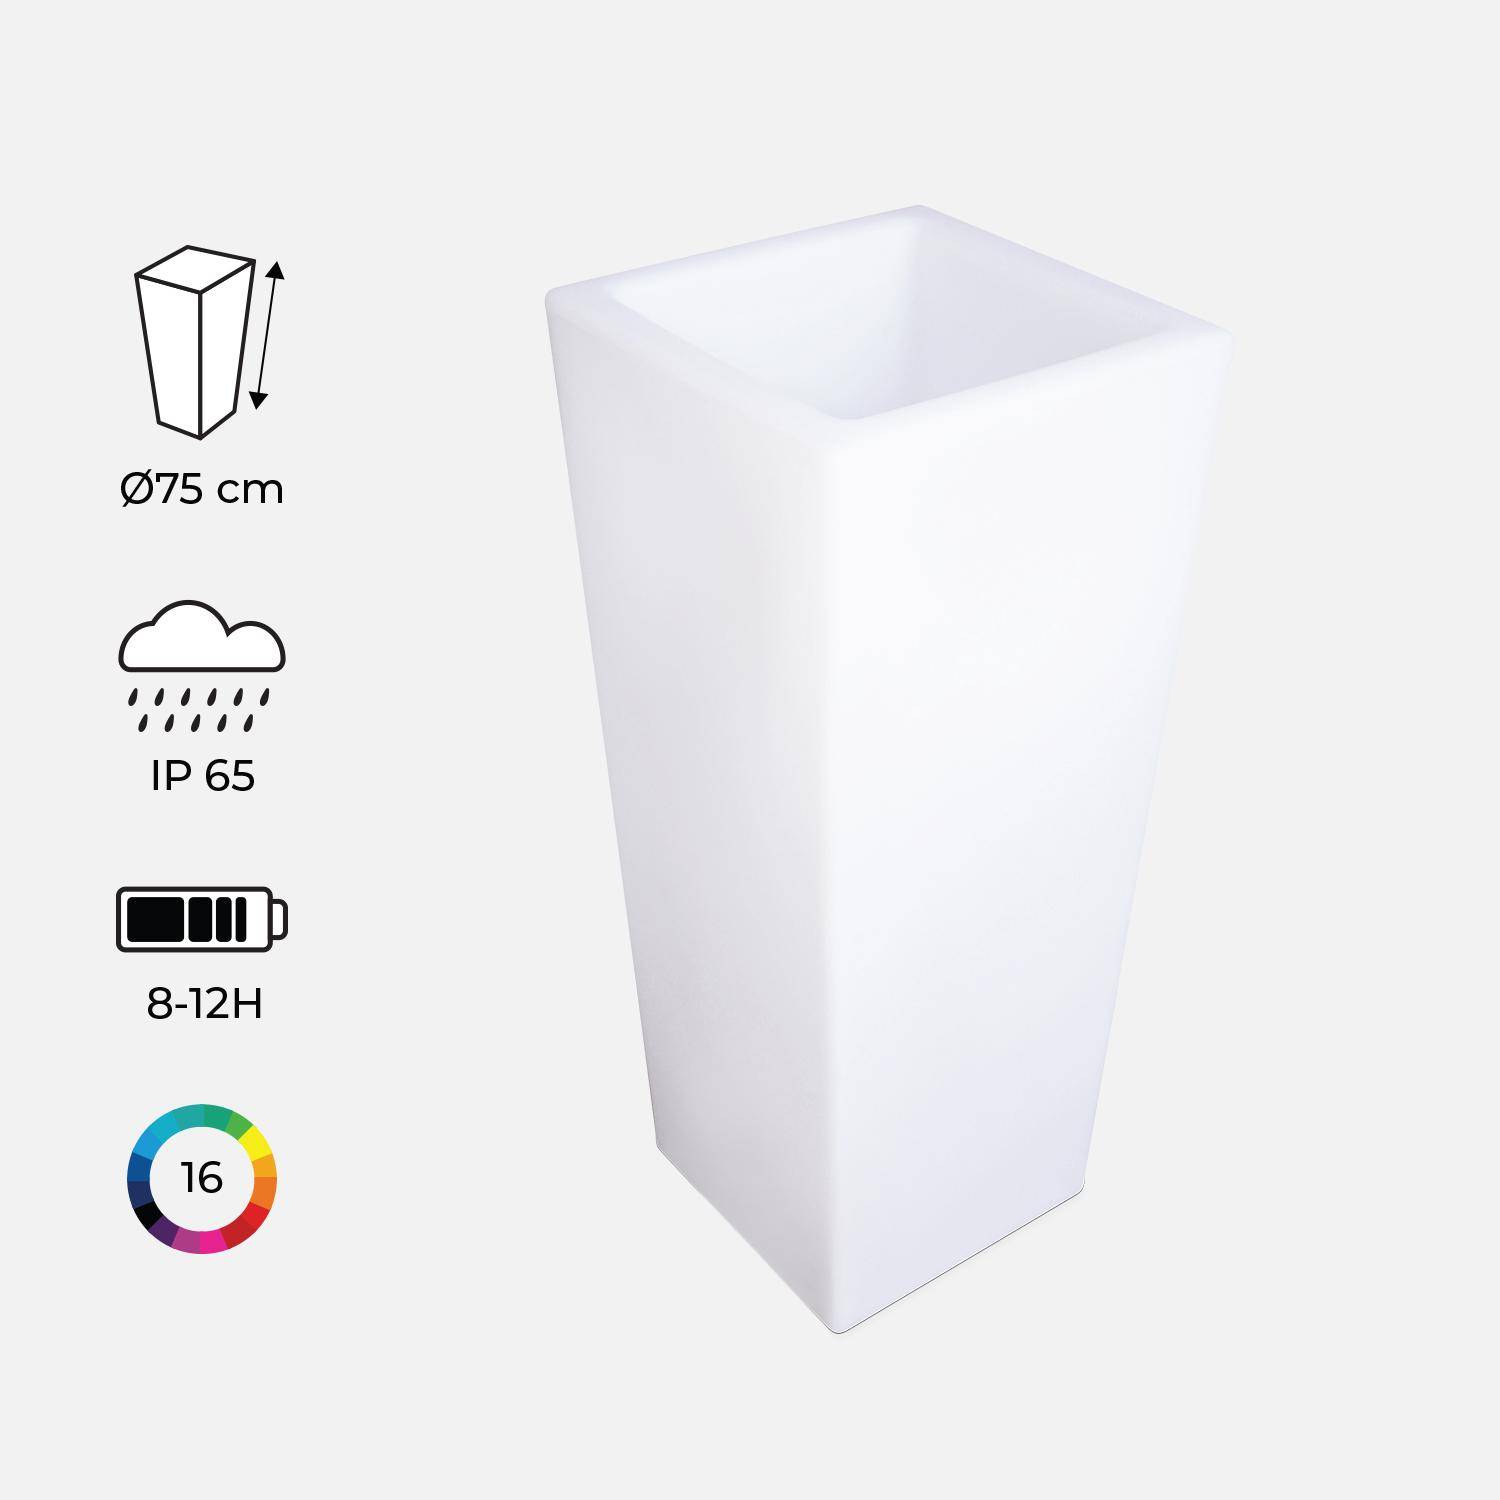 Suporte para vasos de iluminação LED multicolor e recarregável, para exterior  - 16 cores  - Suporte para vasos 75 cm Photo1